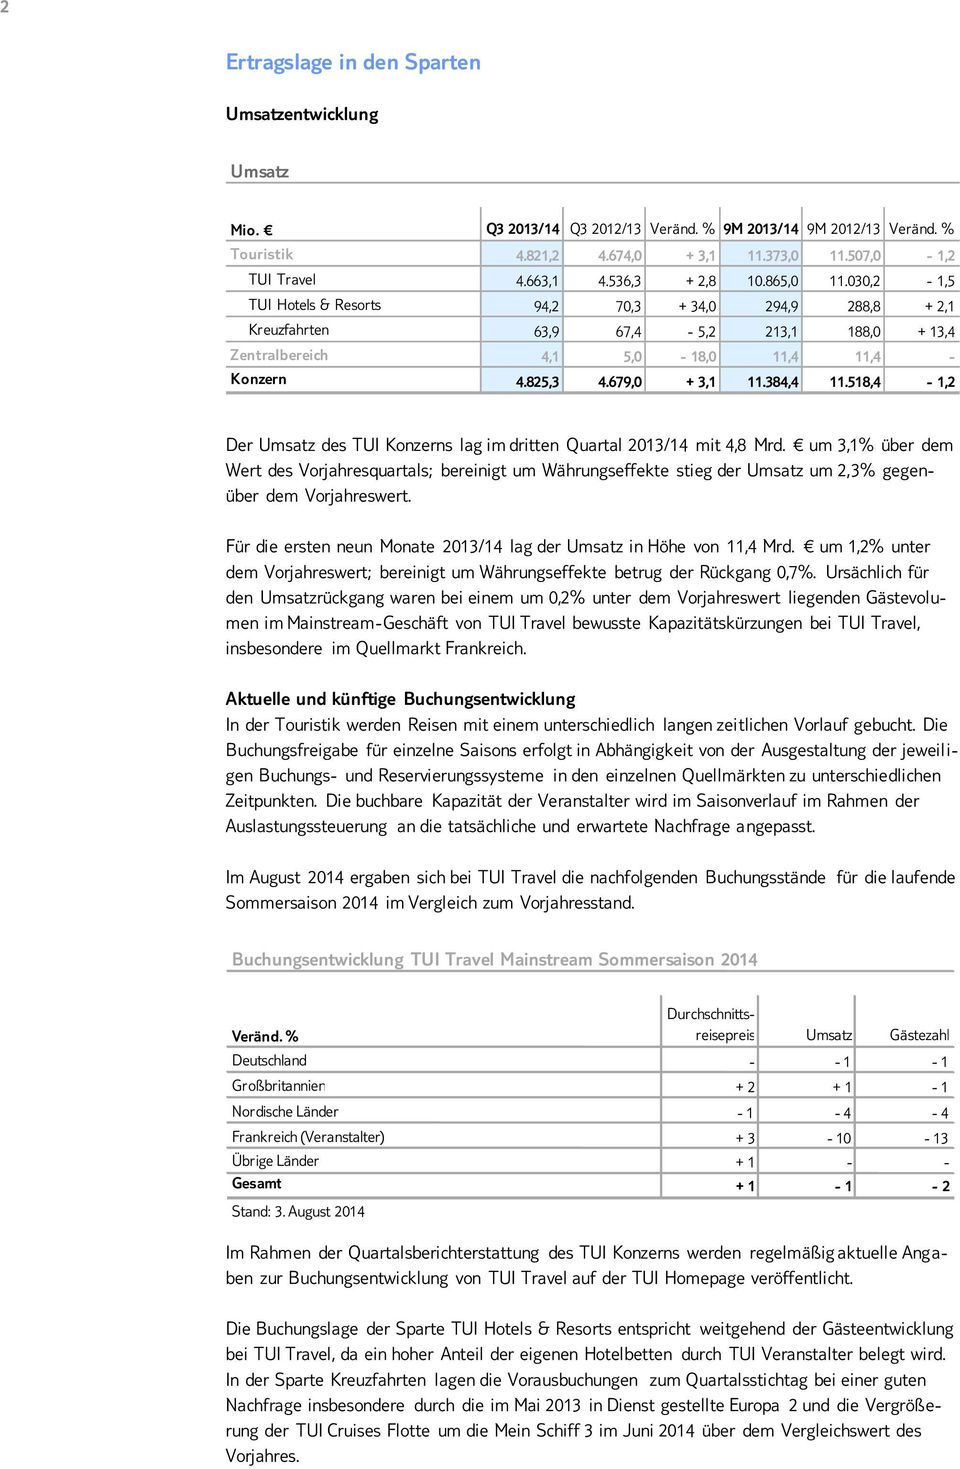 518,4-1,2 Der Umsatz des TUI Konzerns lag im dritten Quartal 2013/14 mit 4,8 Mrd.